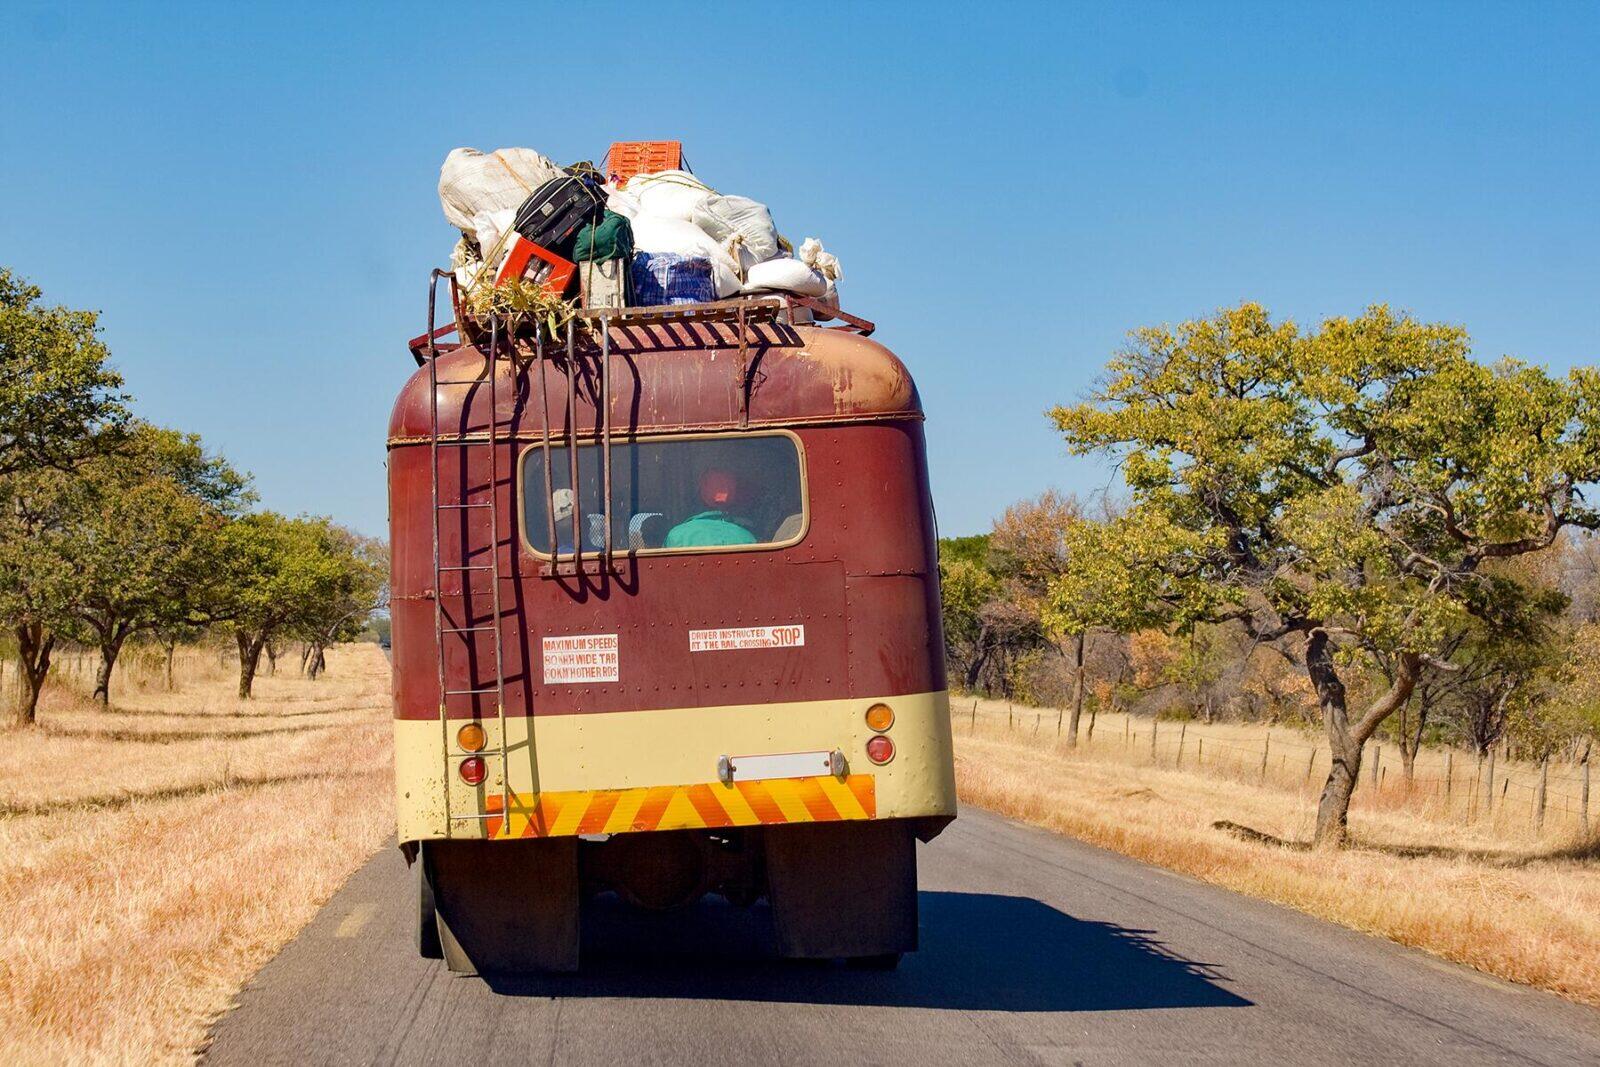 bus tours in zimbabwe